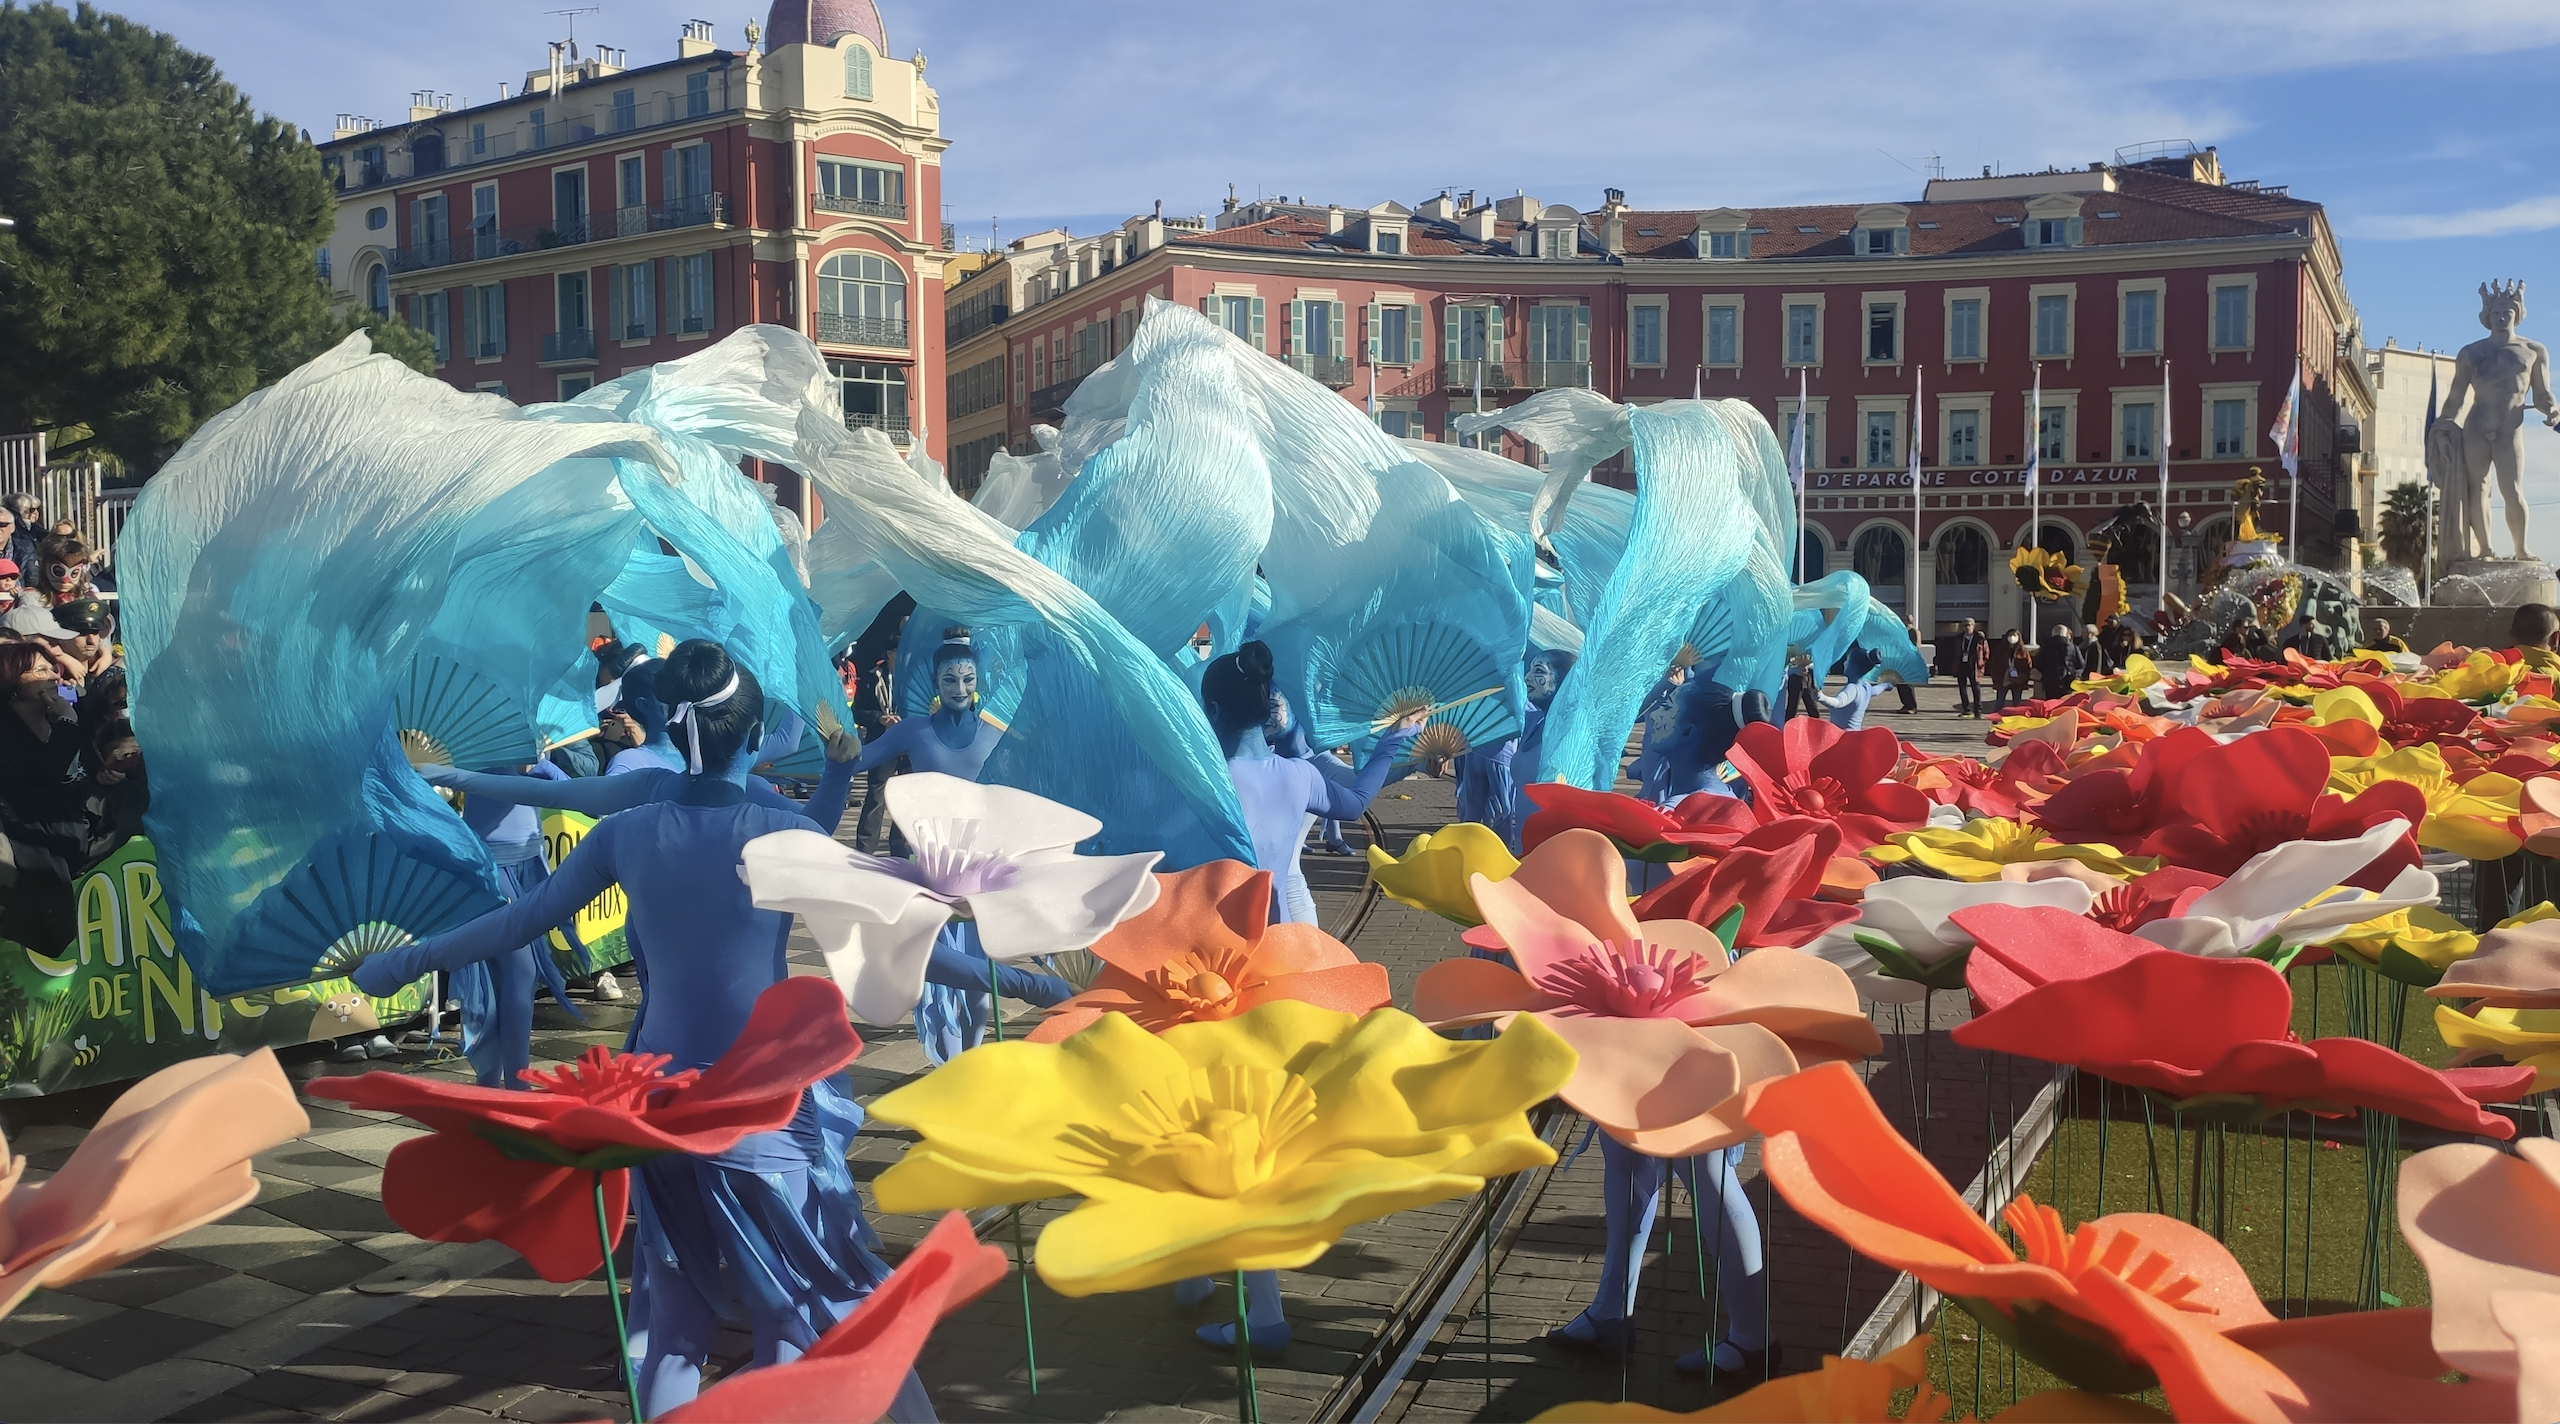 Le Carnaval des retrouvailles à Nice/ aufildeslieux.fr/ Danseuses aux voiles bleus © K.Hibbs